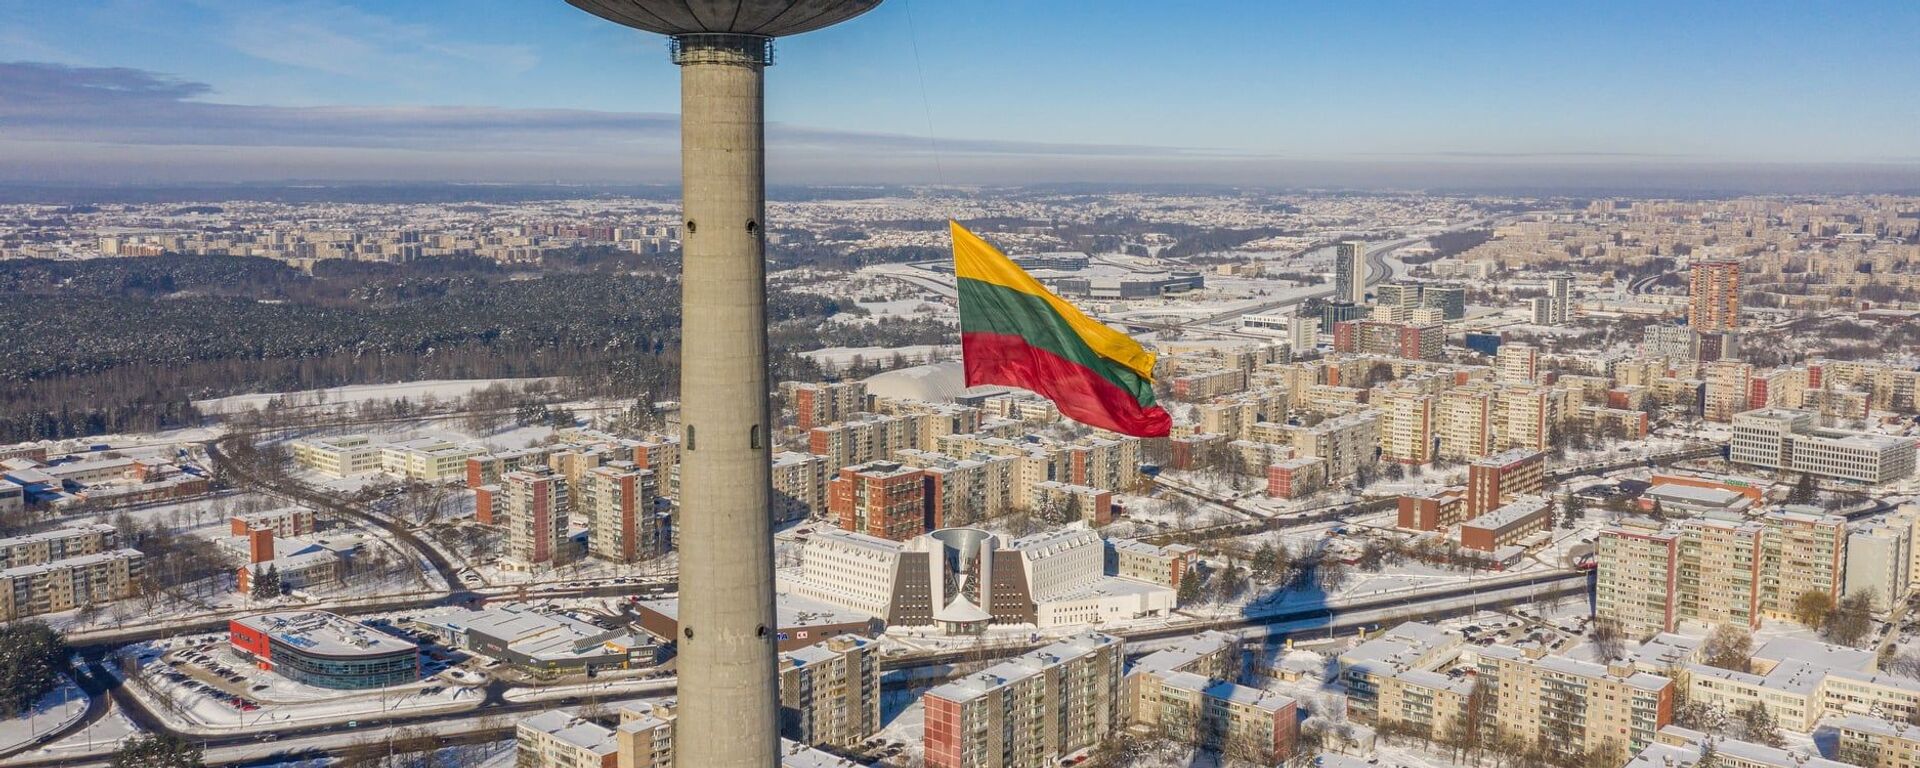 Вильнюсская телебашня с литовским флагом на фоне города - Sputnik Lietuva, 1920, 26.02.2021